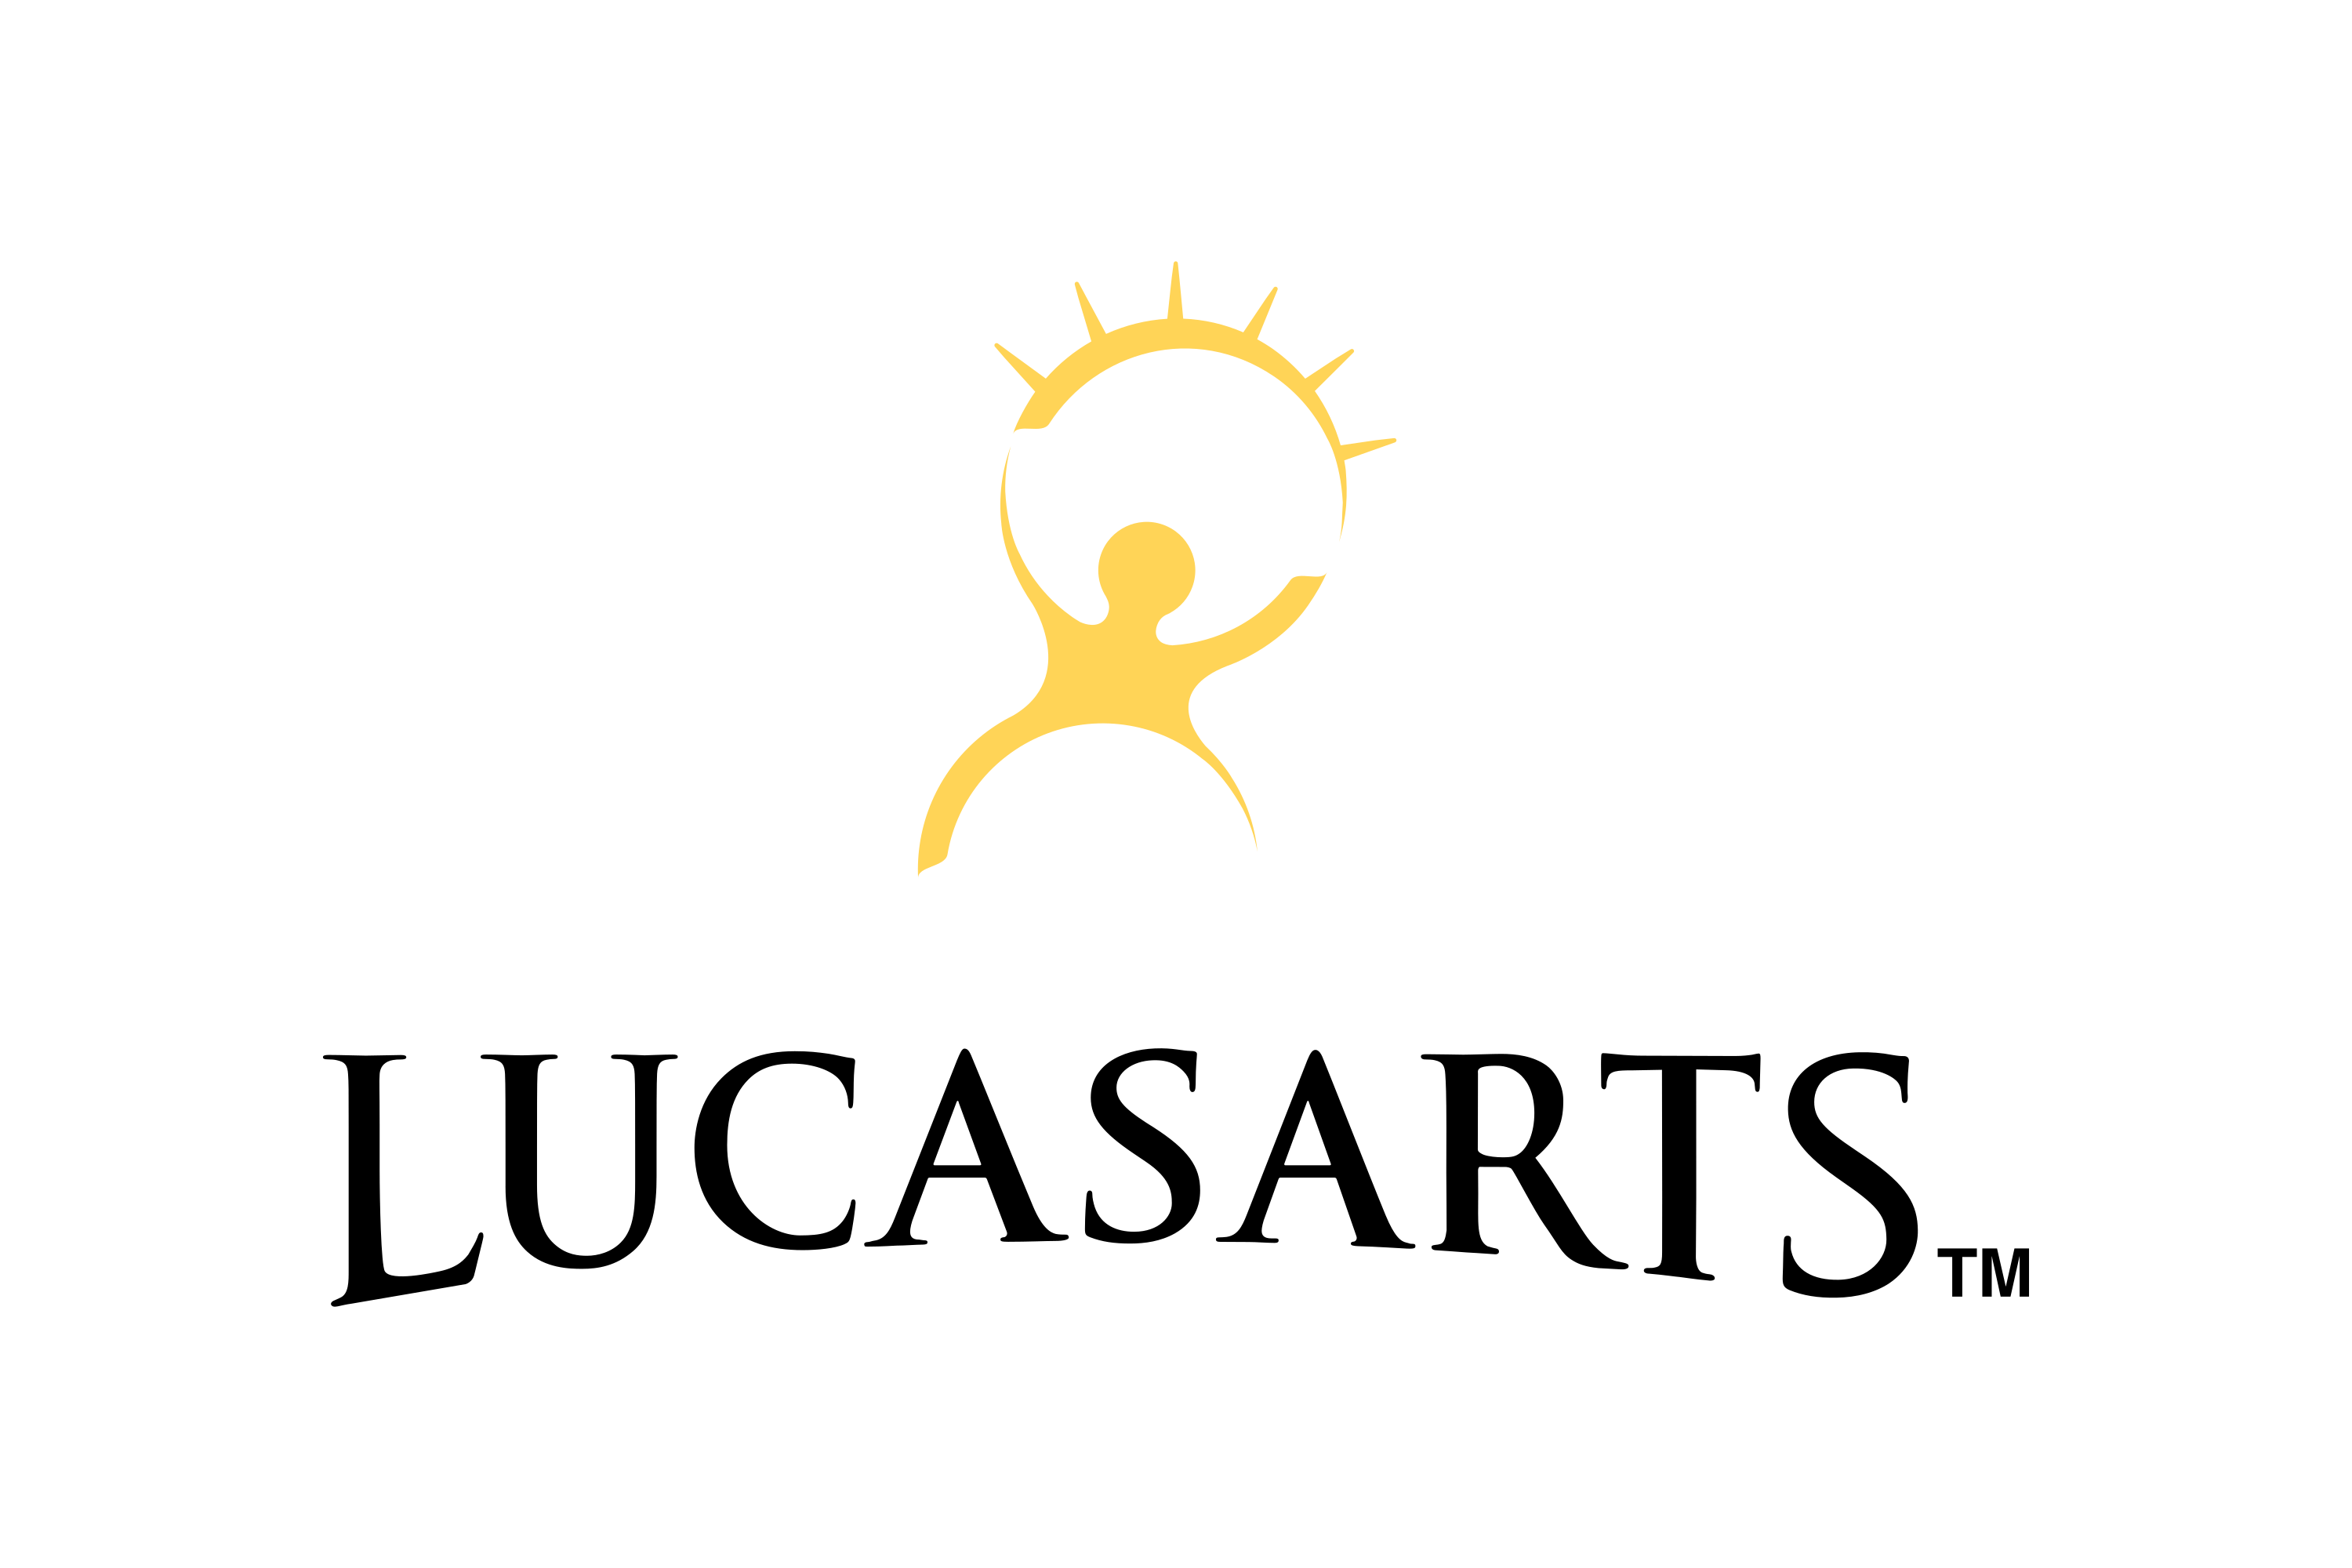 LucasArts